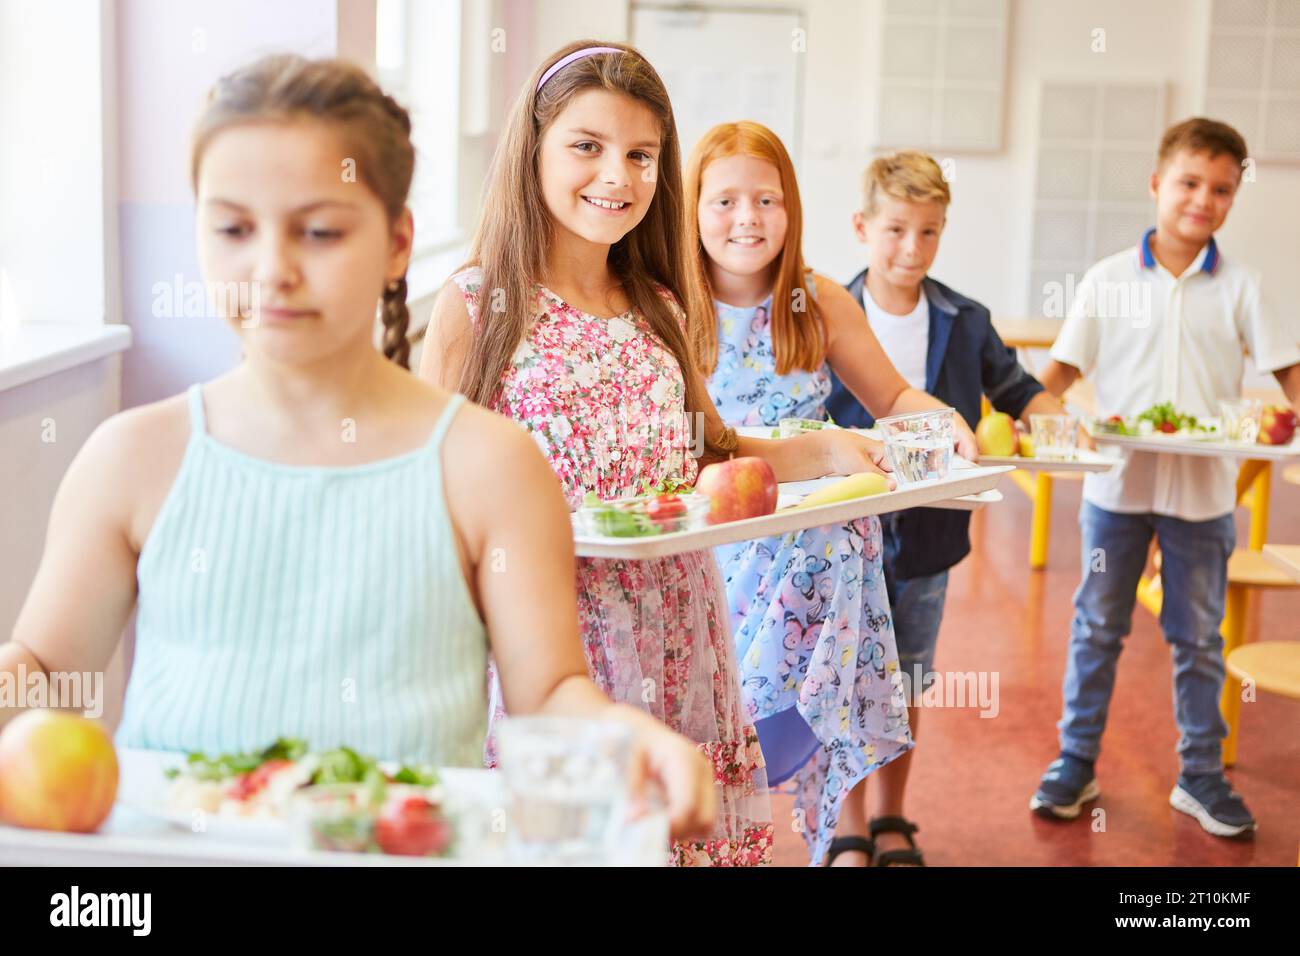 Porträt lächelnder Schülerinnen und Schüler mit Essensschalen, die während der Mittagspause in der Schulcafeteria anstehen Stockfoto